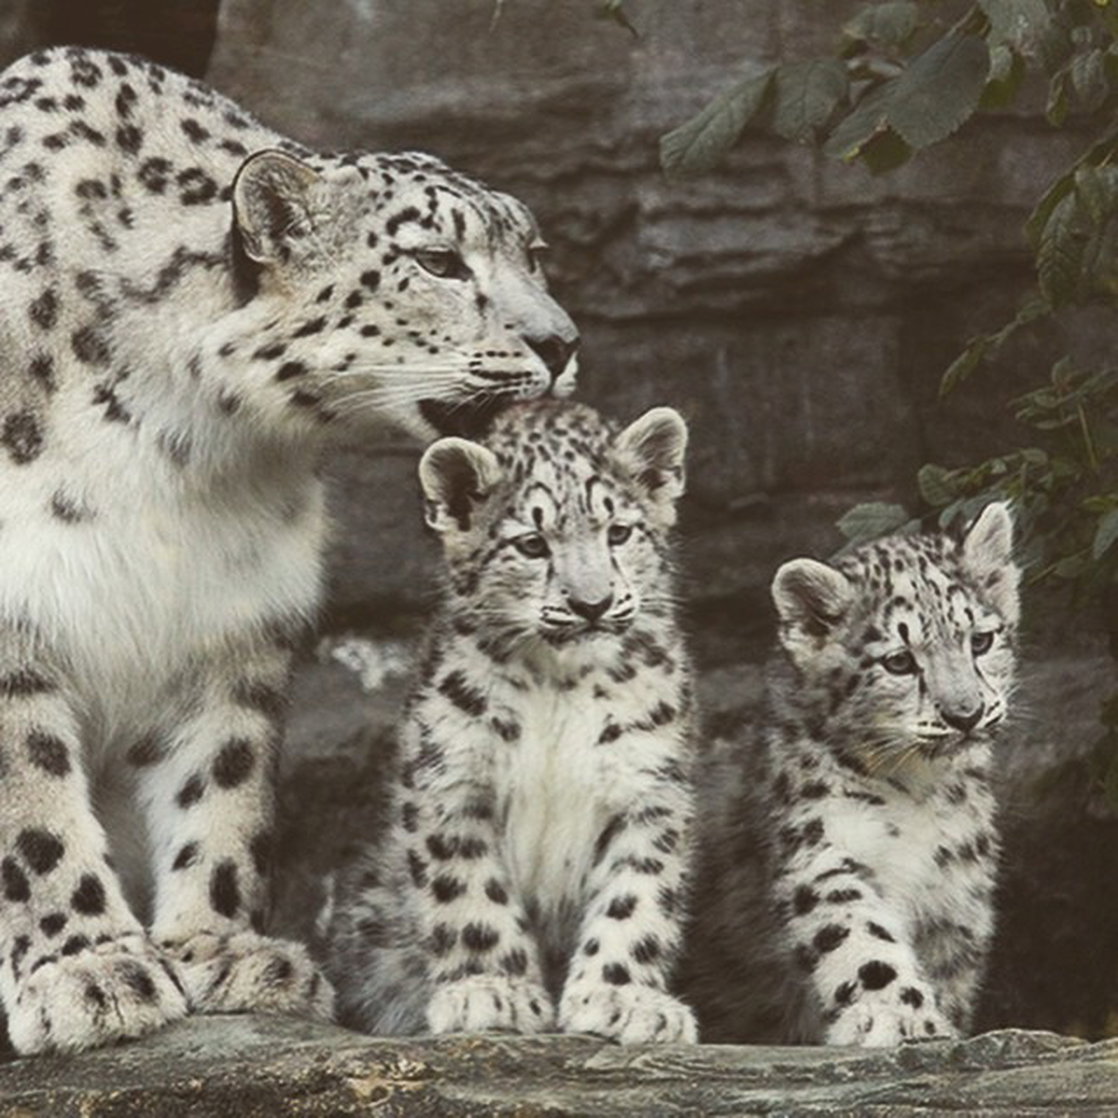 smbup snow leopard